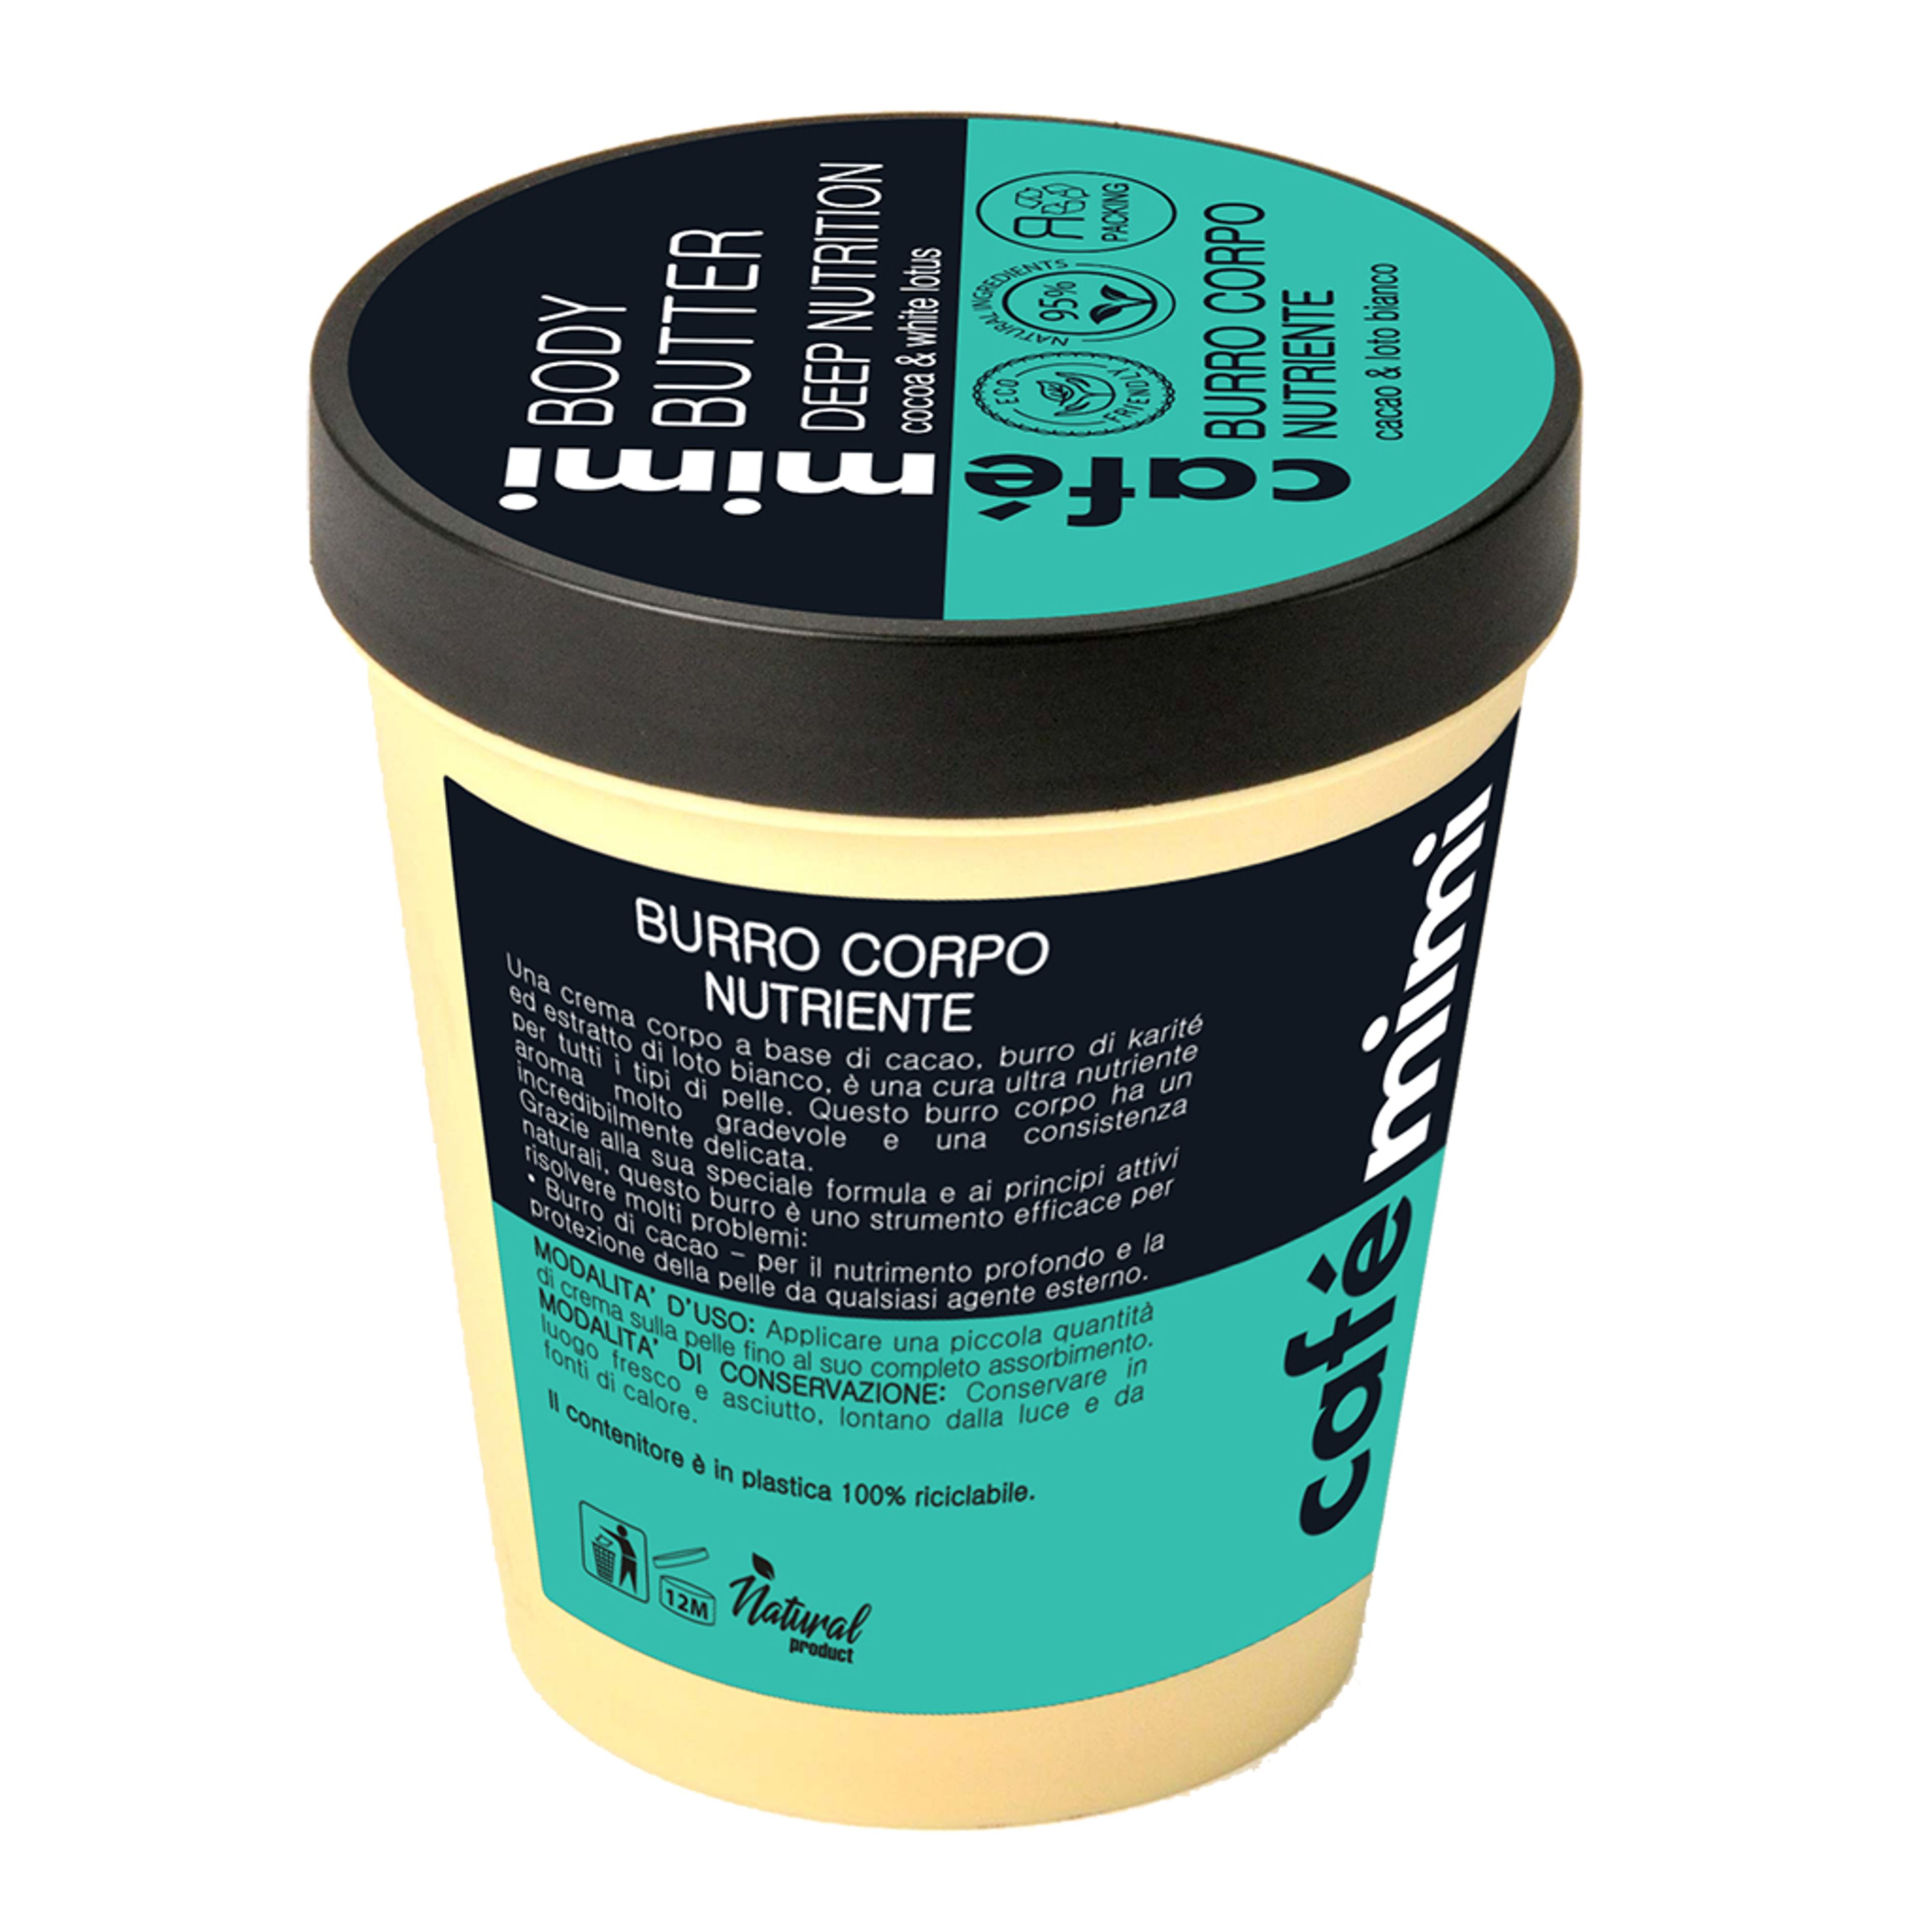 Café Mimi Burro Corpo Nutriente
cacao & Loto Bianco 2